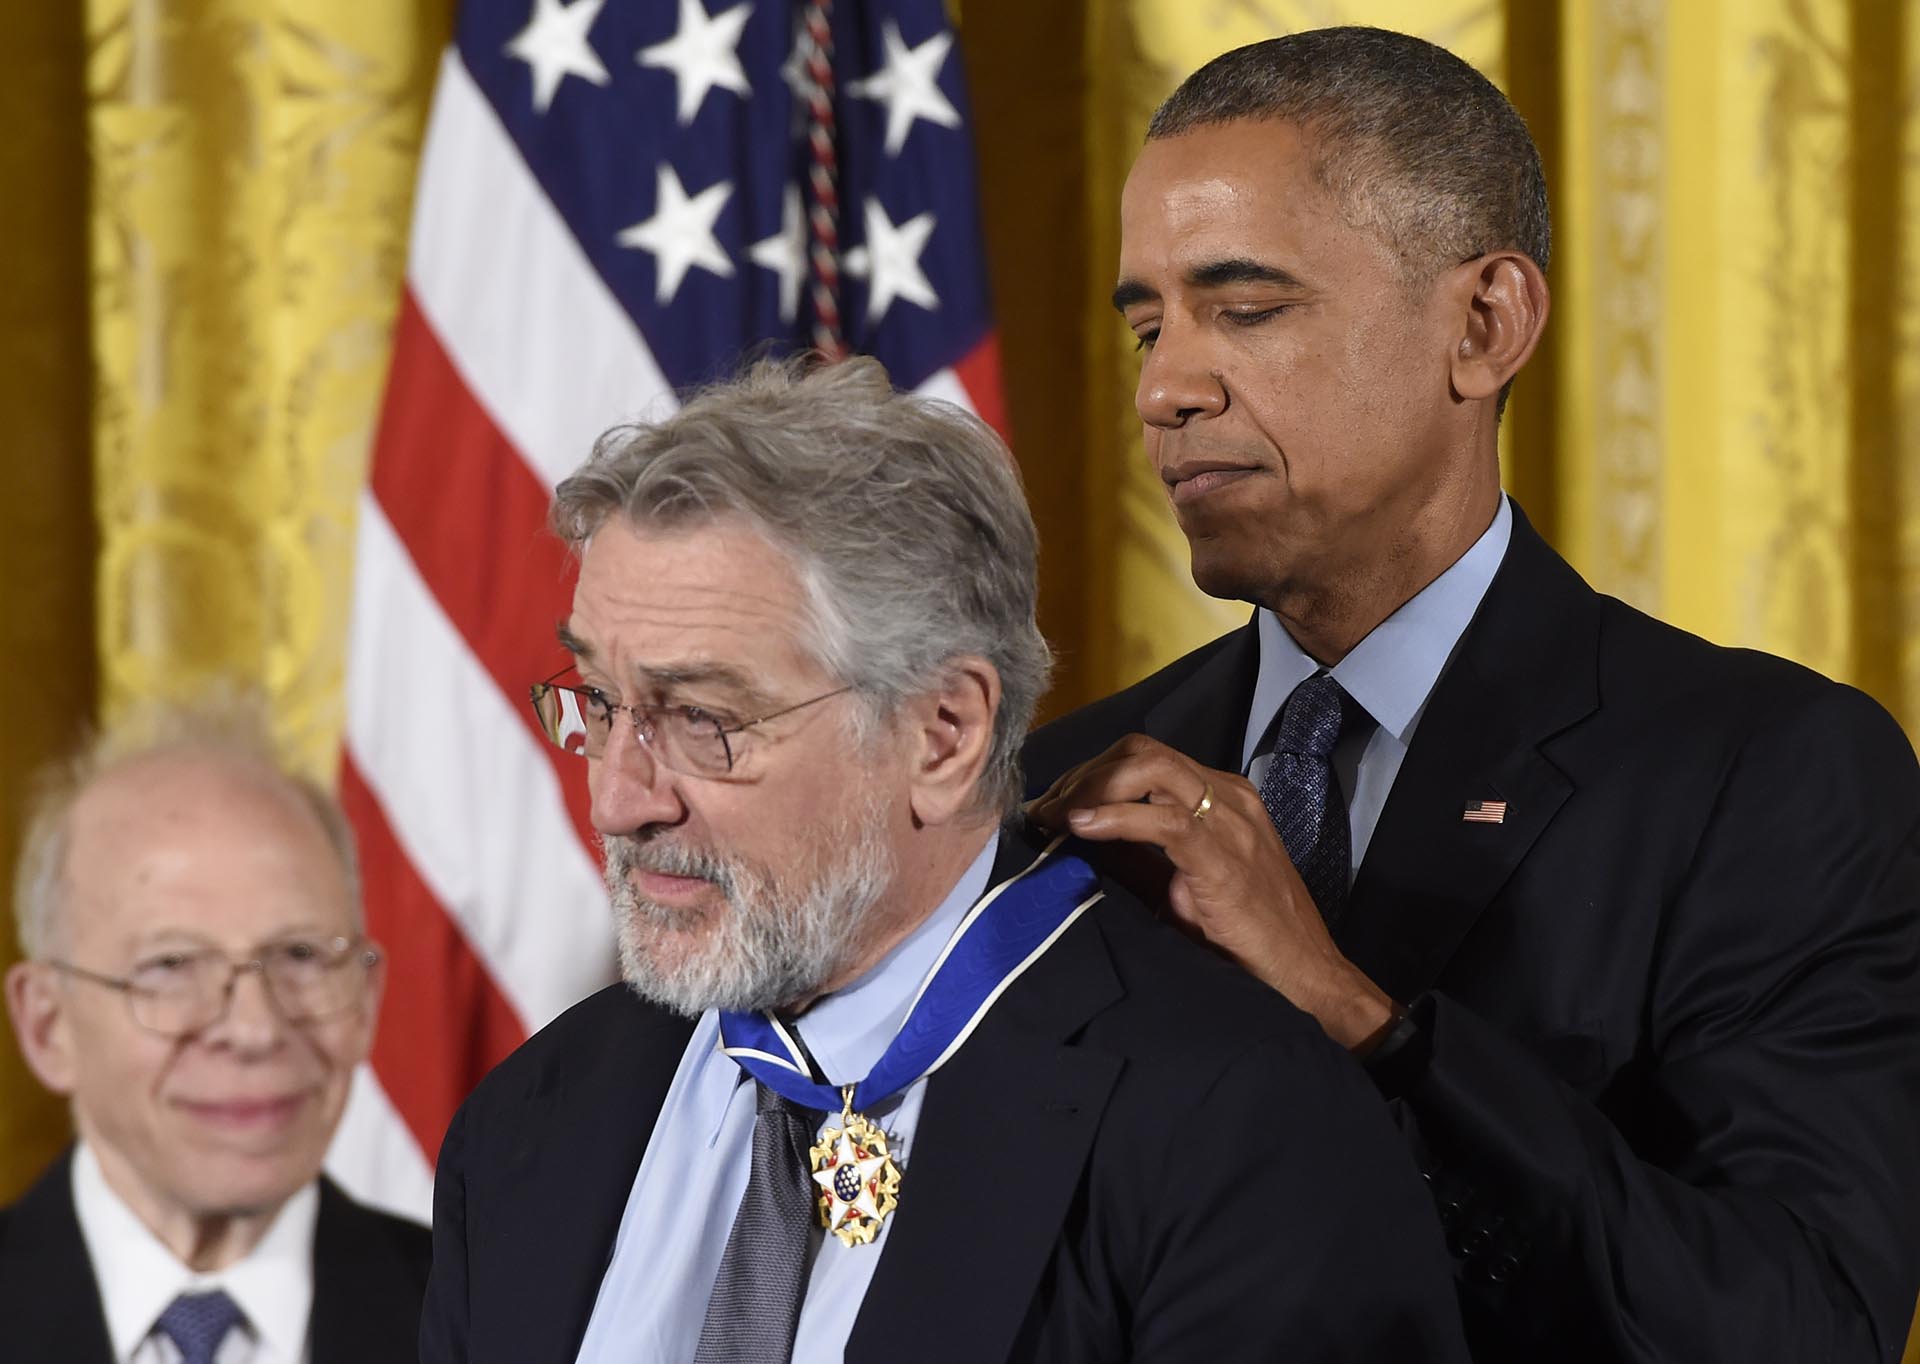 Robert de Niro recibió la Medalla de la Libertad a sus 73 años, en manos de Barack Obama (Foto: AFP)